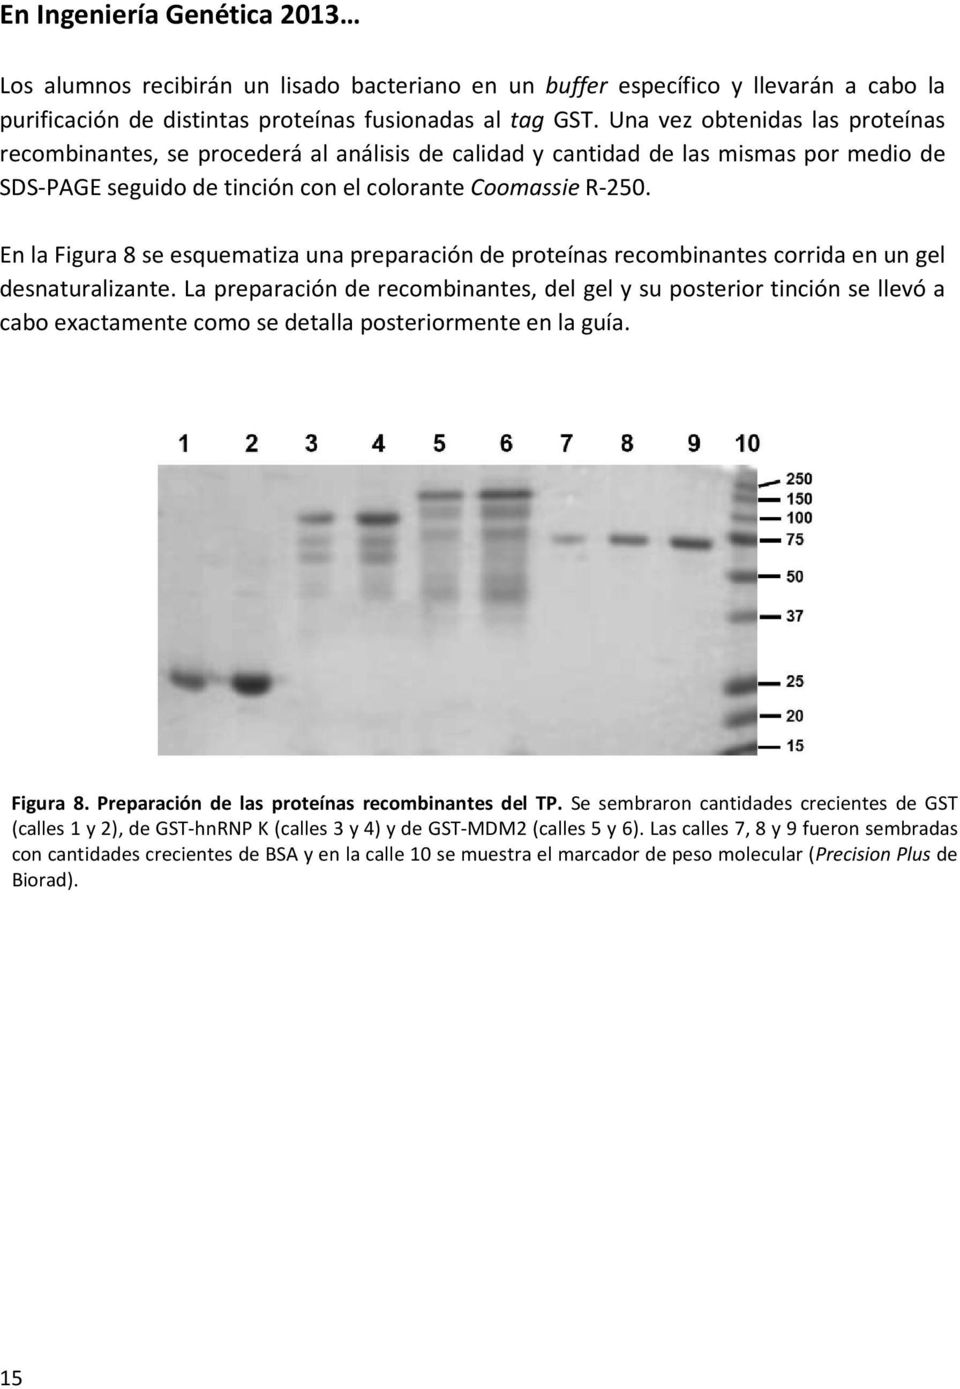 En la Figura 8 se esquematiza una preparación de proteínas recombinantes corrida en un gel desnaturalizante.